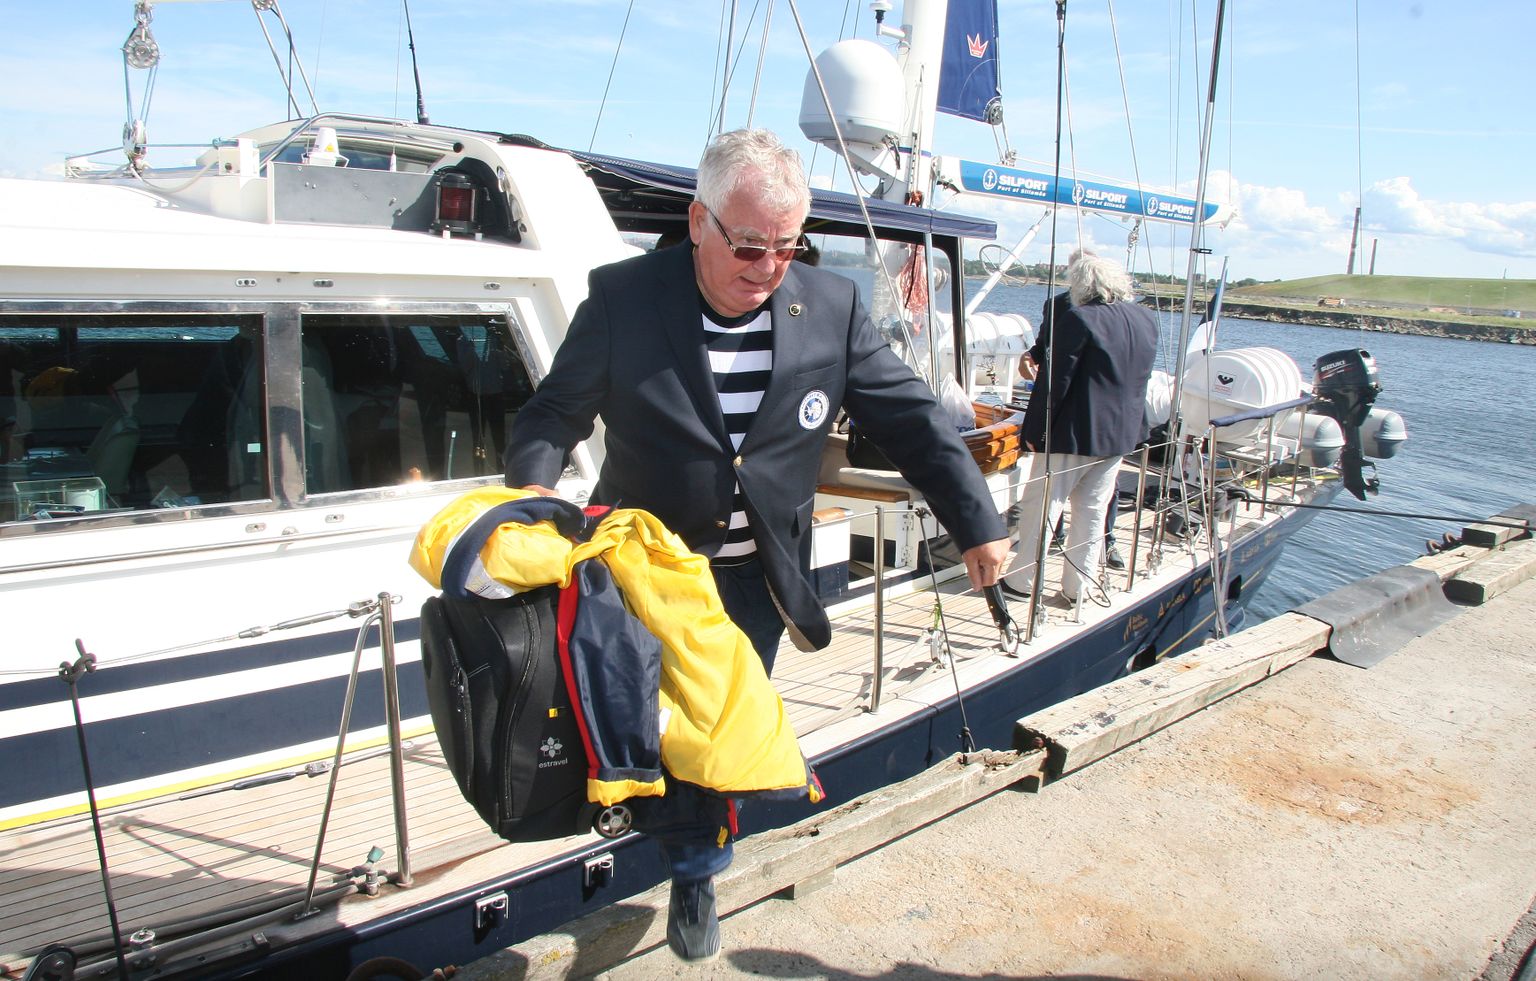 Летом 2019 года Силламяэский порт встречал парусник "Адмирал Беллинсгаузен", который отправился на другой конец света - в Антарктику. Тийт Вяхи принял участие в первом этапе морского похода - от Кронштадта до Силламяэ.